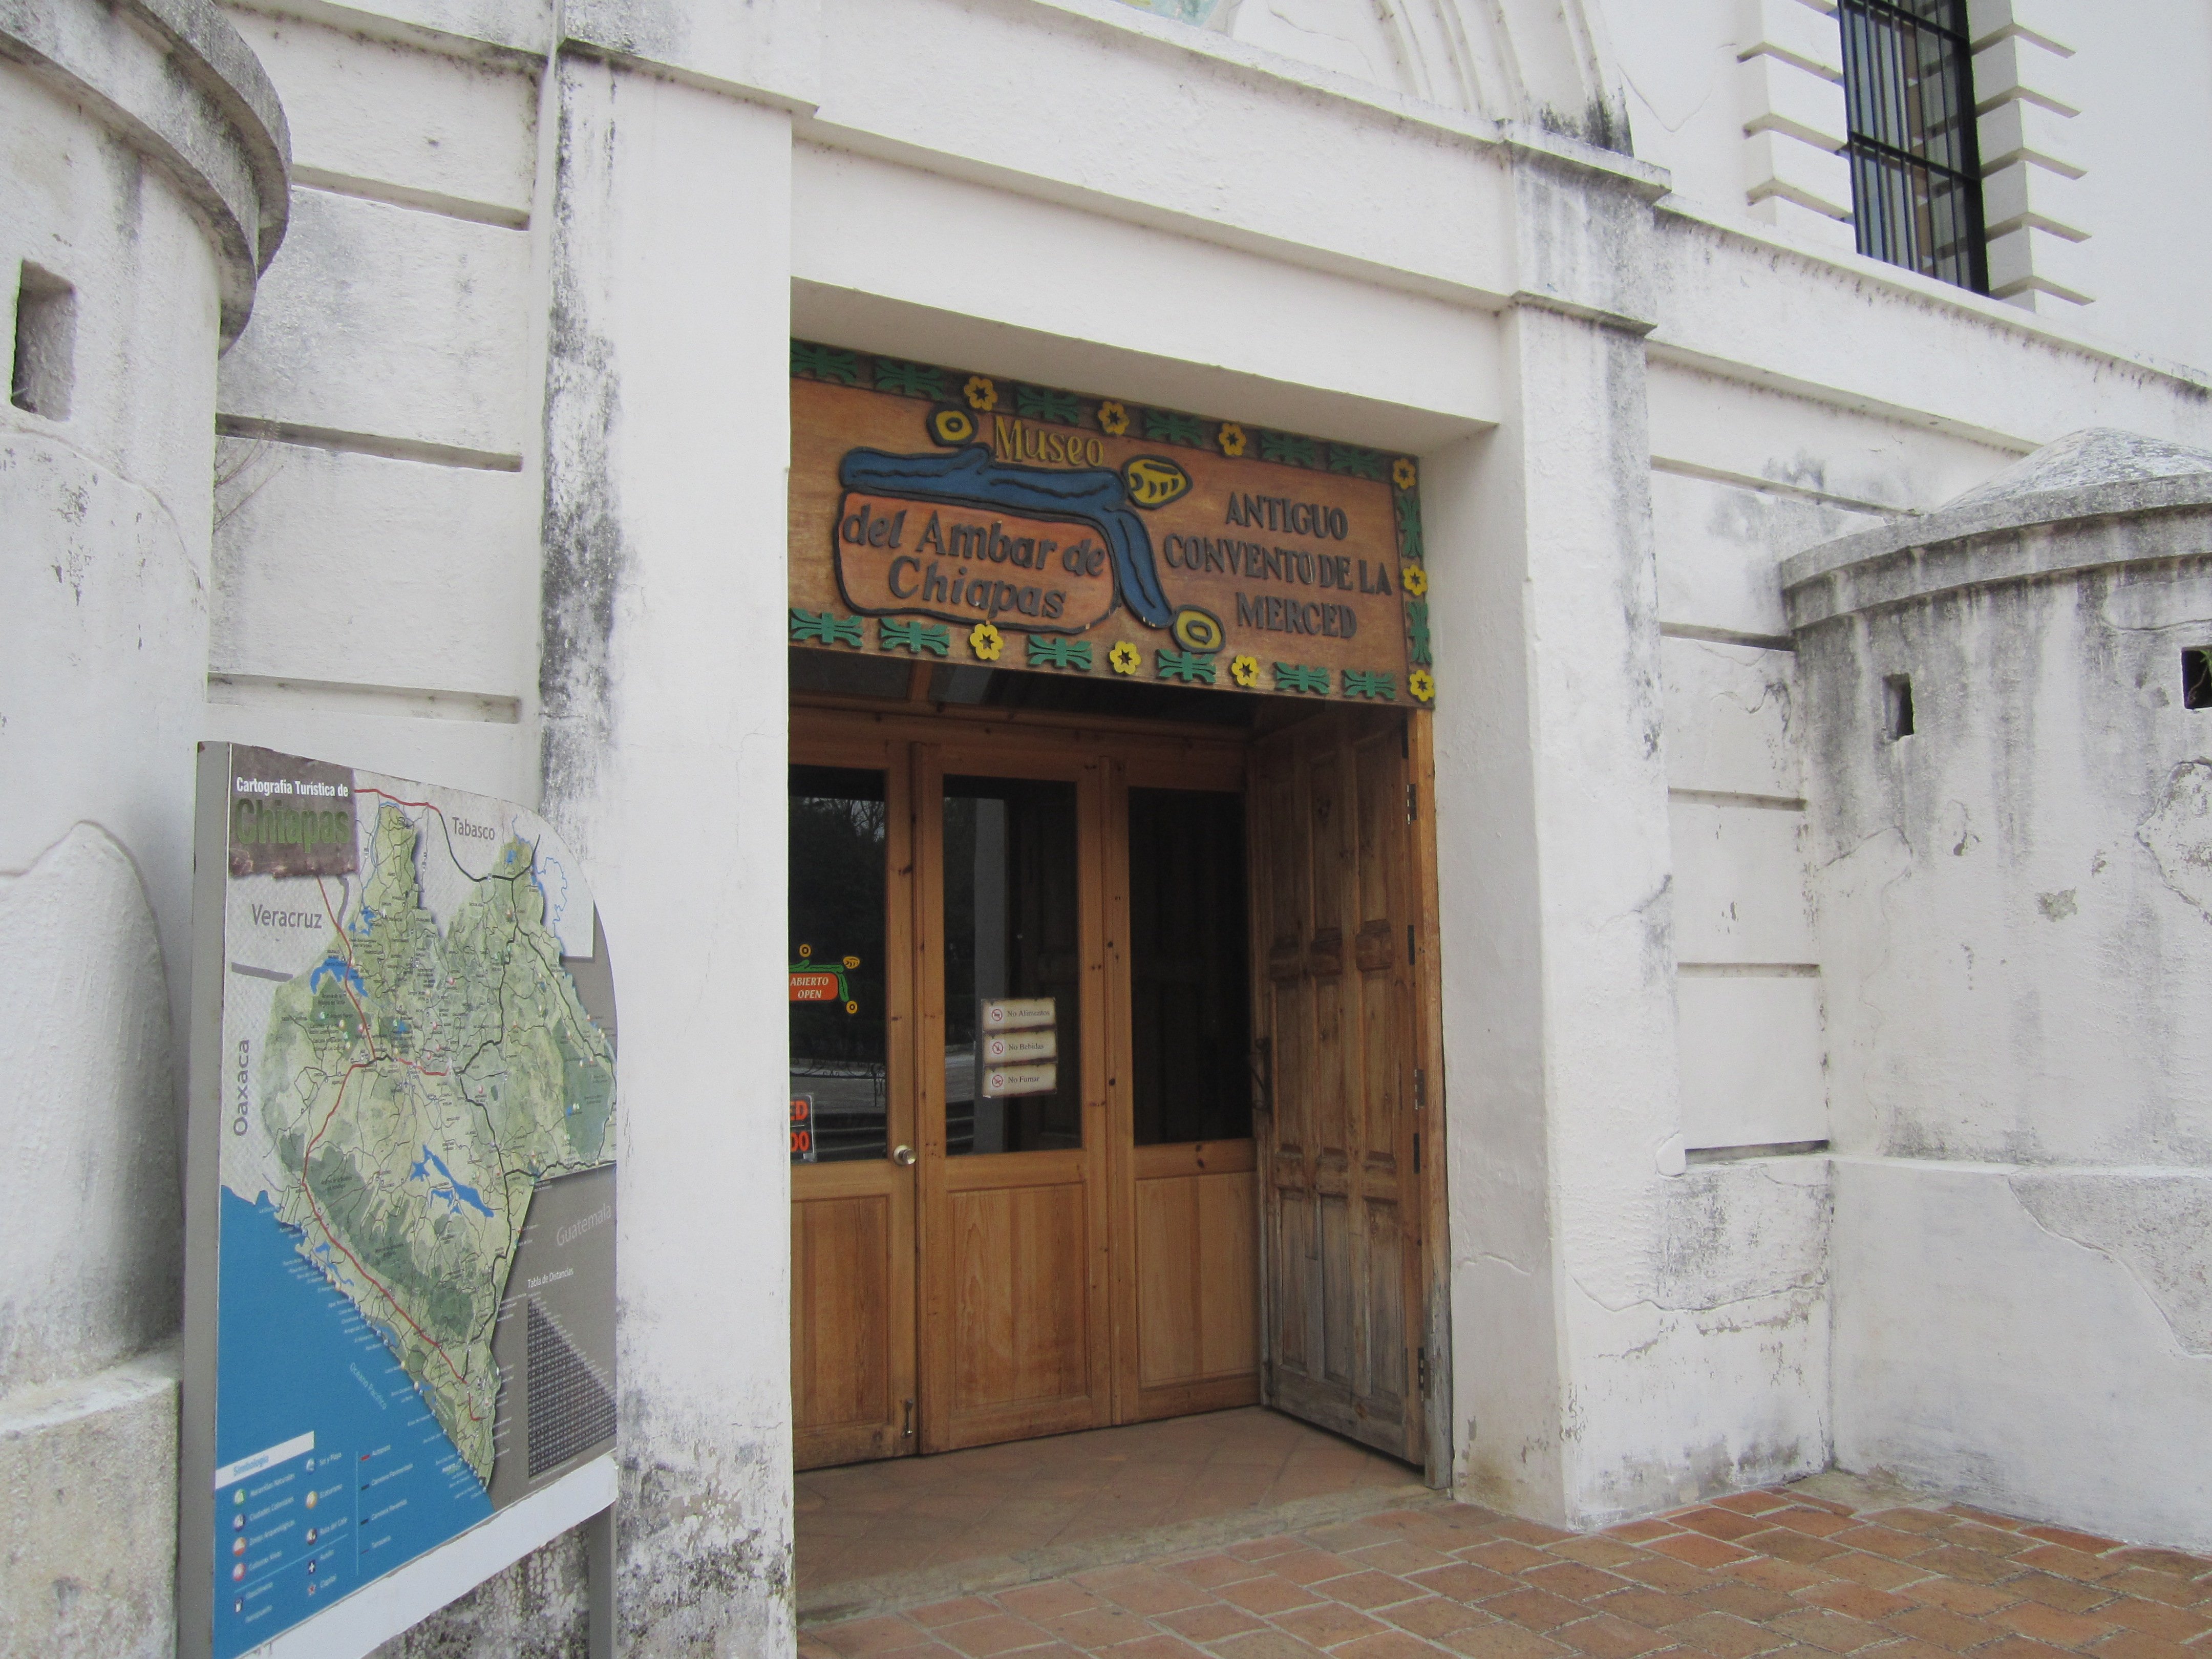 Museo del Ámbar en San Cristóbal de Las Casas: 2 opiniones y 3 fotos